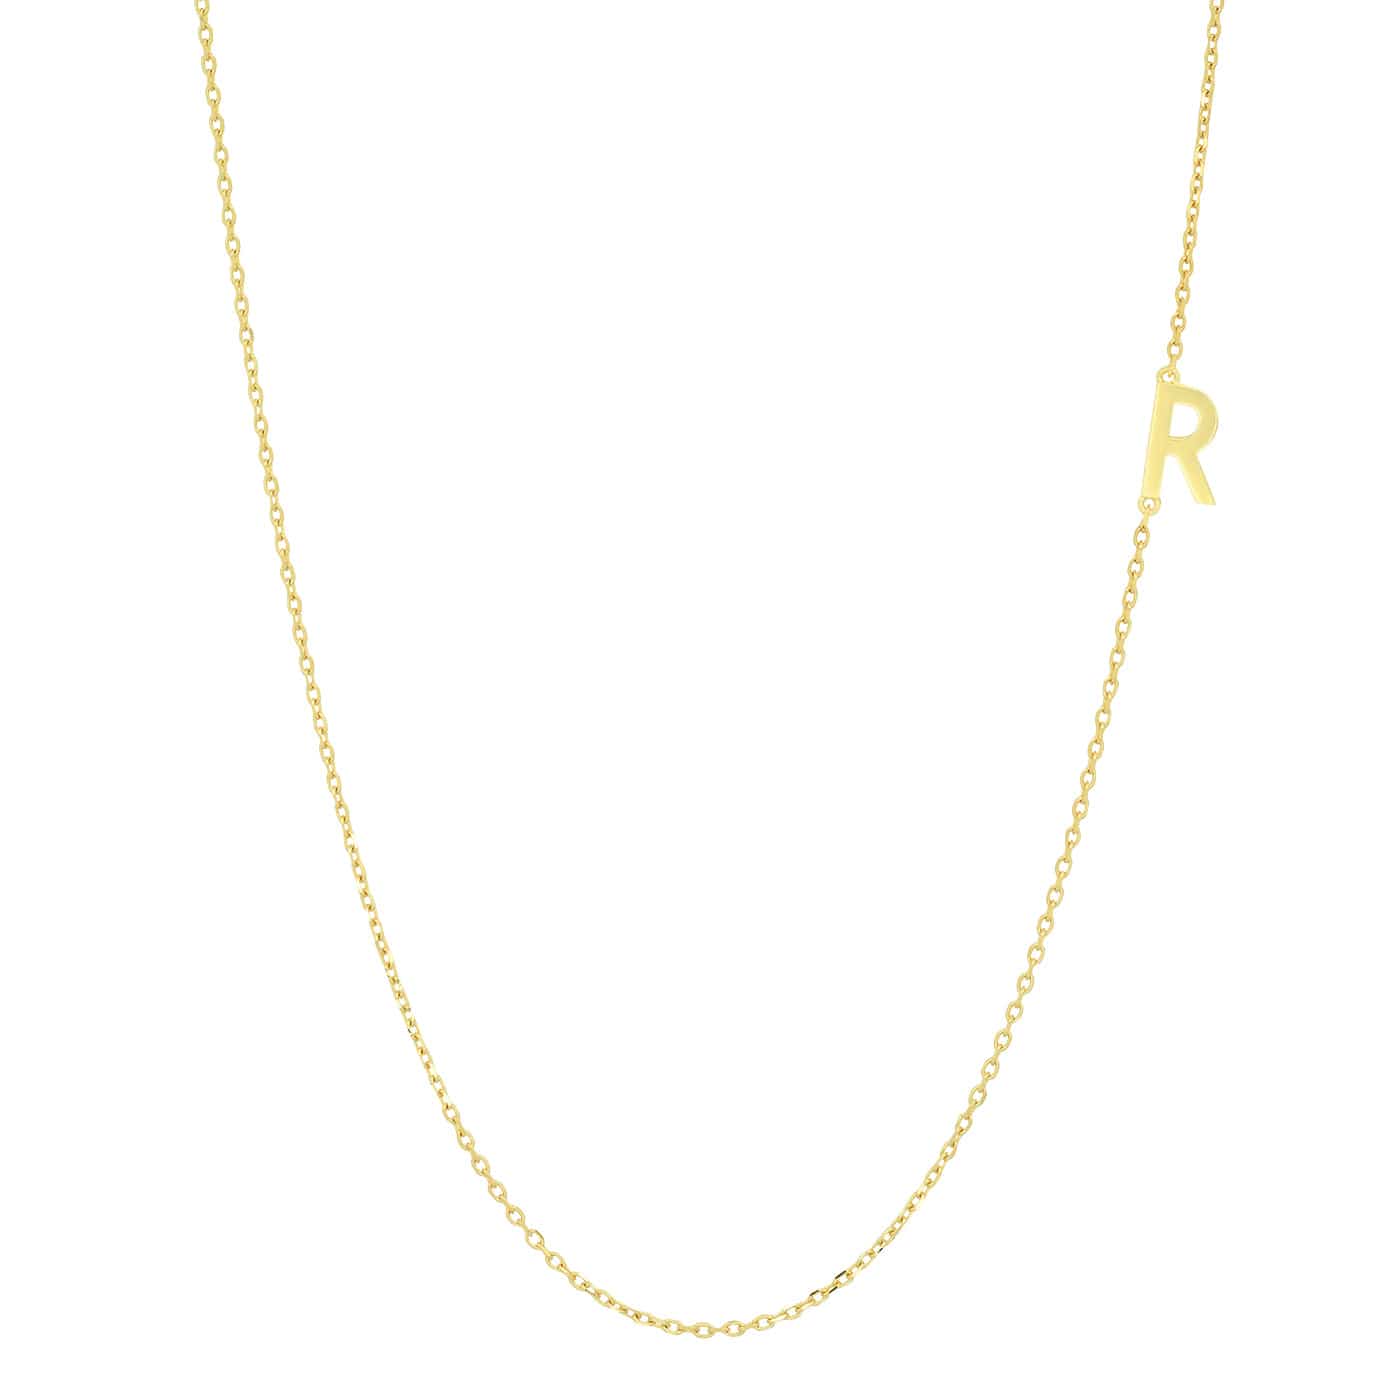 TAI JEWELRY Necklace R 14k Sideways Monogram Necklace